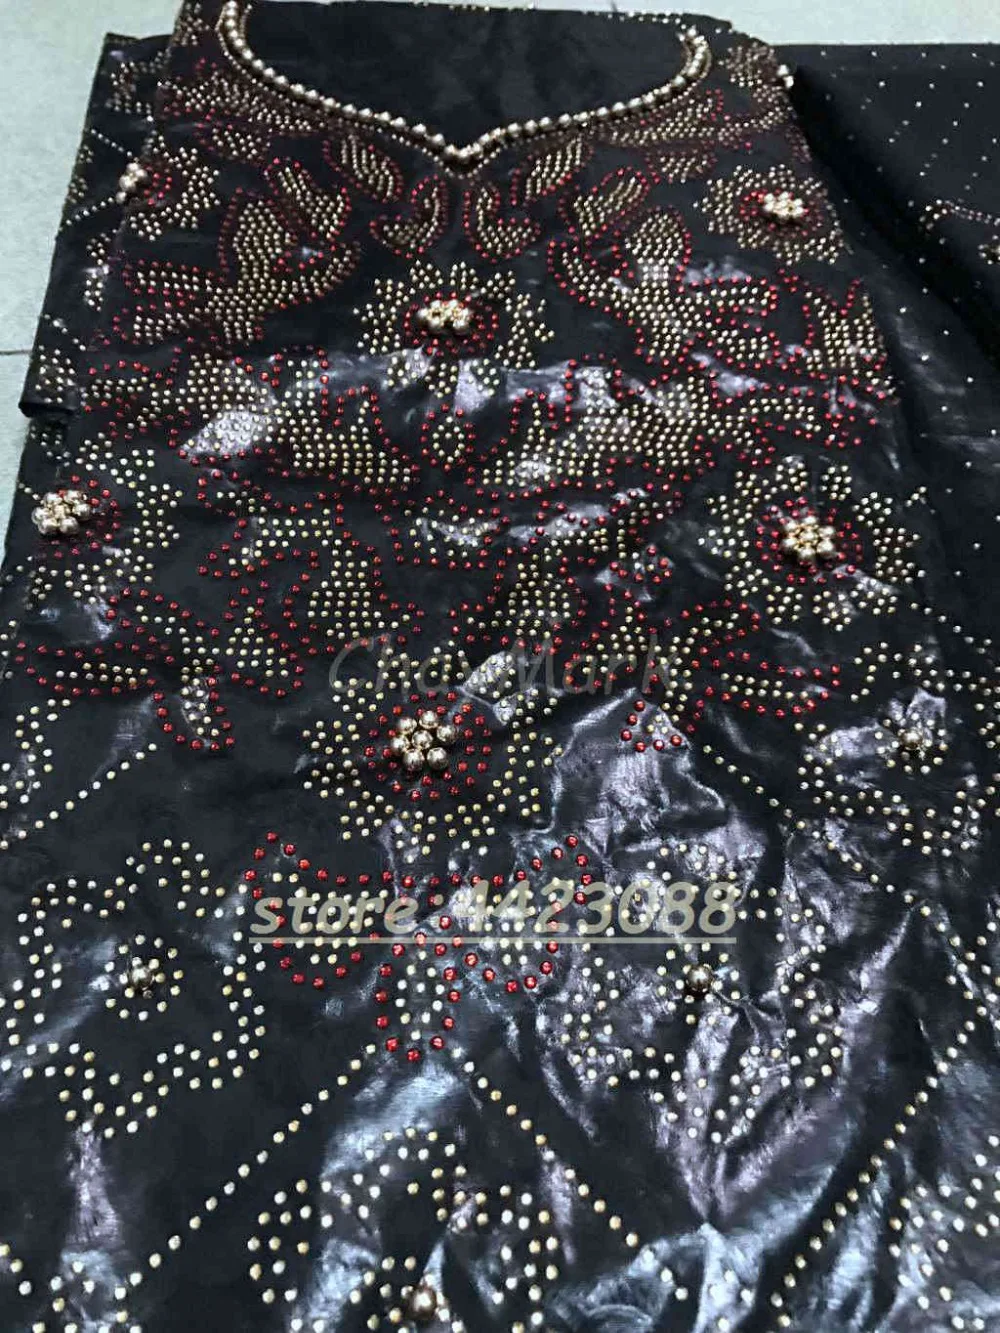 Лучшее качество Африканский Базен парча богаче Getzner камни бусины Морская раковина одежды кружевные материалы 3+ 2+ 2 ярдов в комплекте для платья